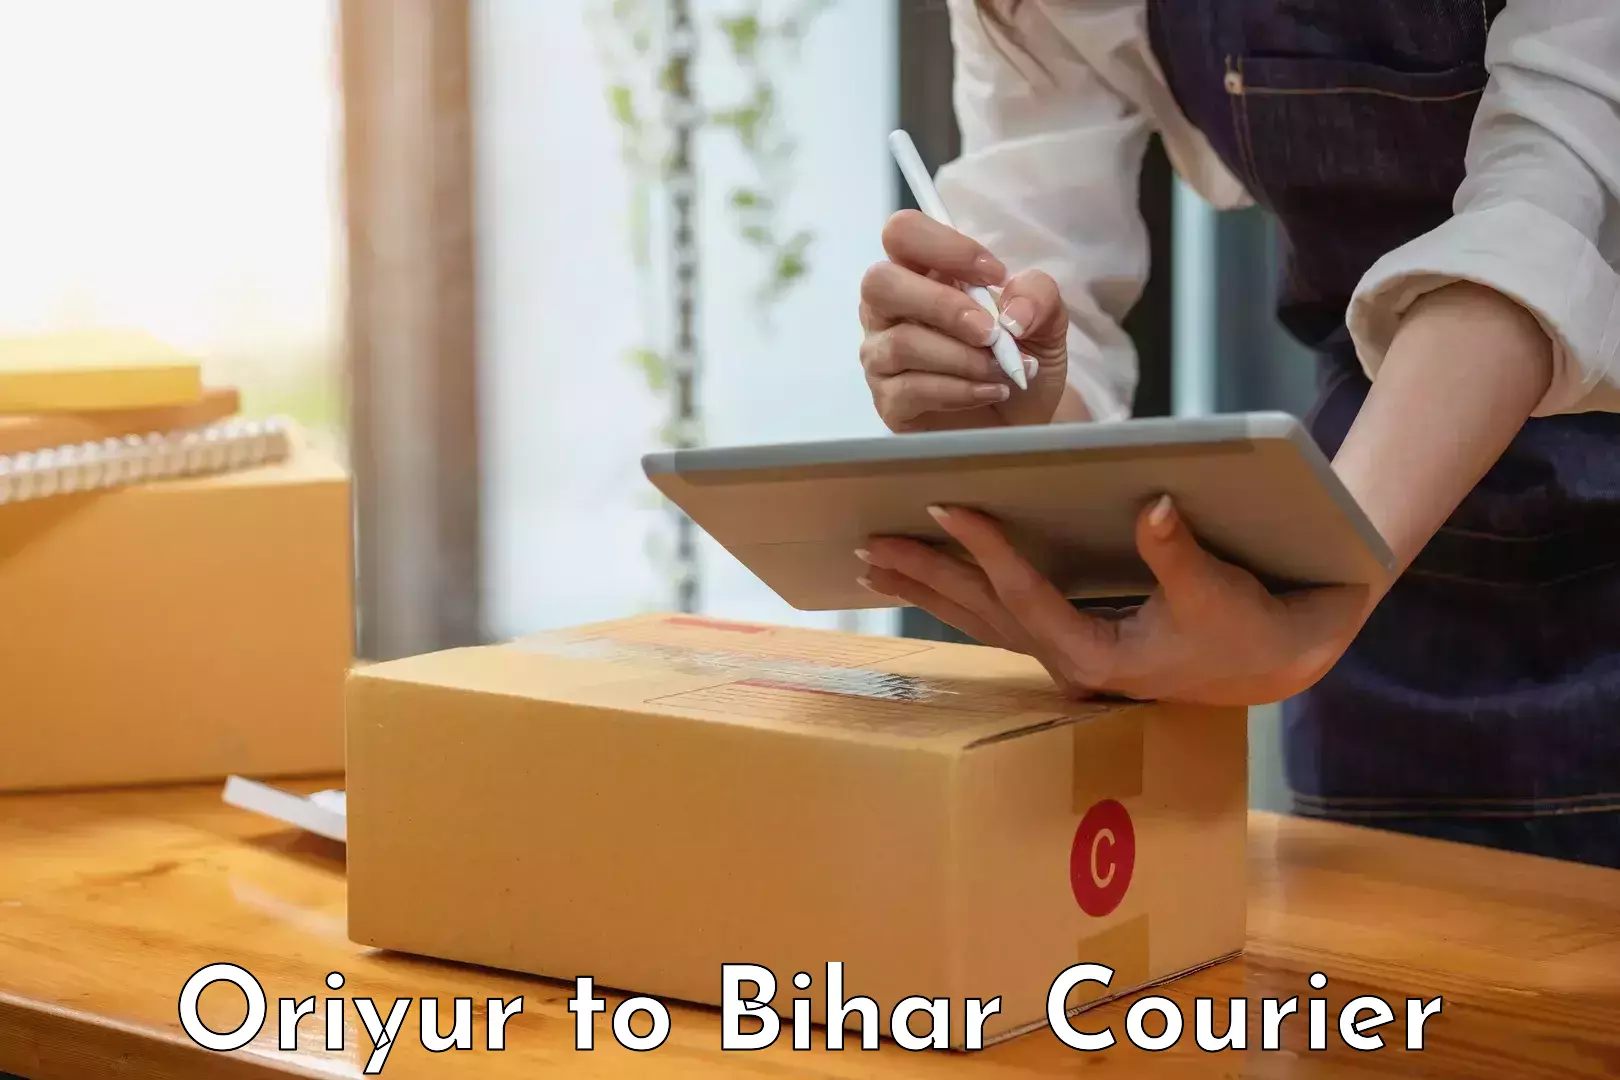 Quality courier services Oriyur to Lalganj Vaishali